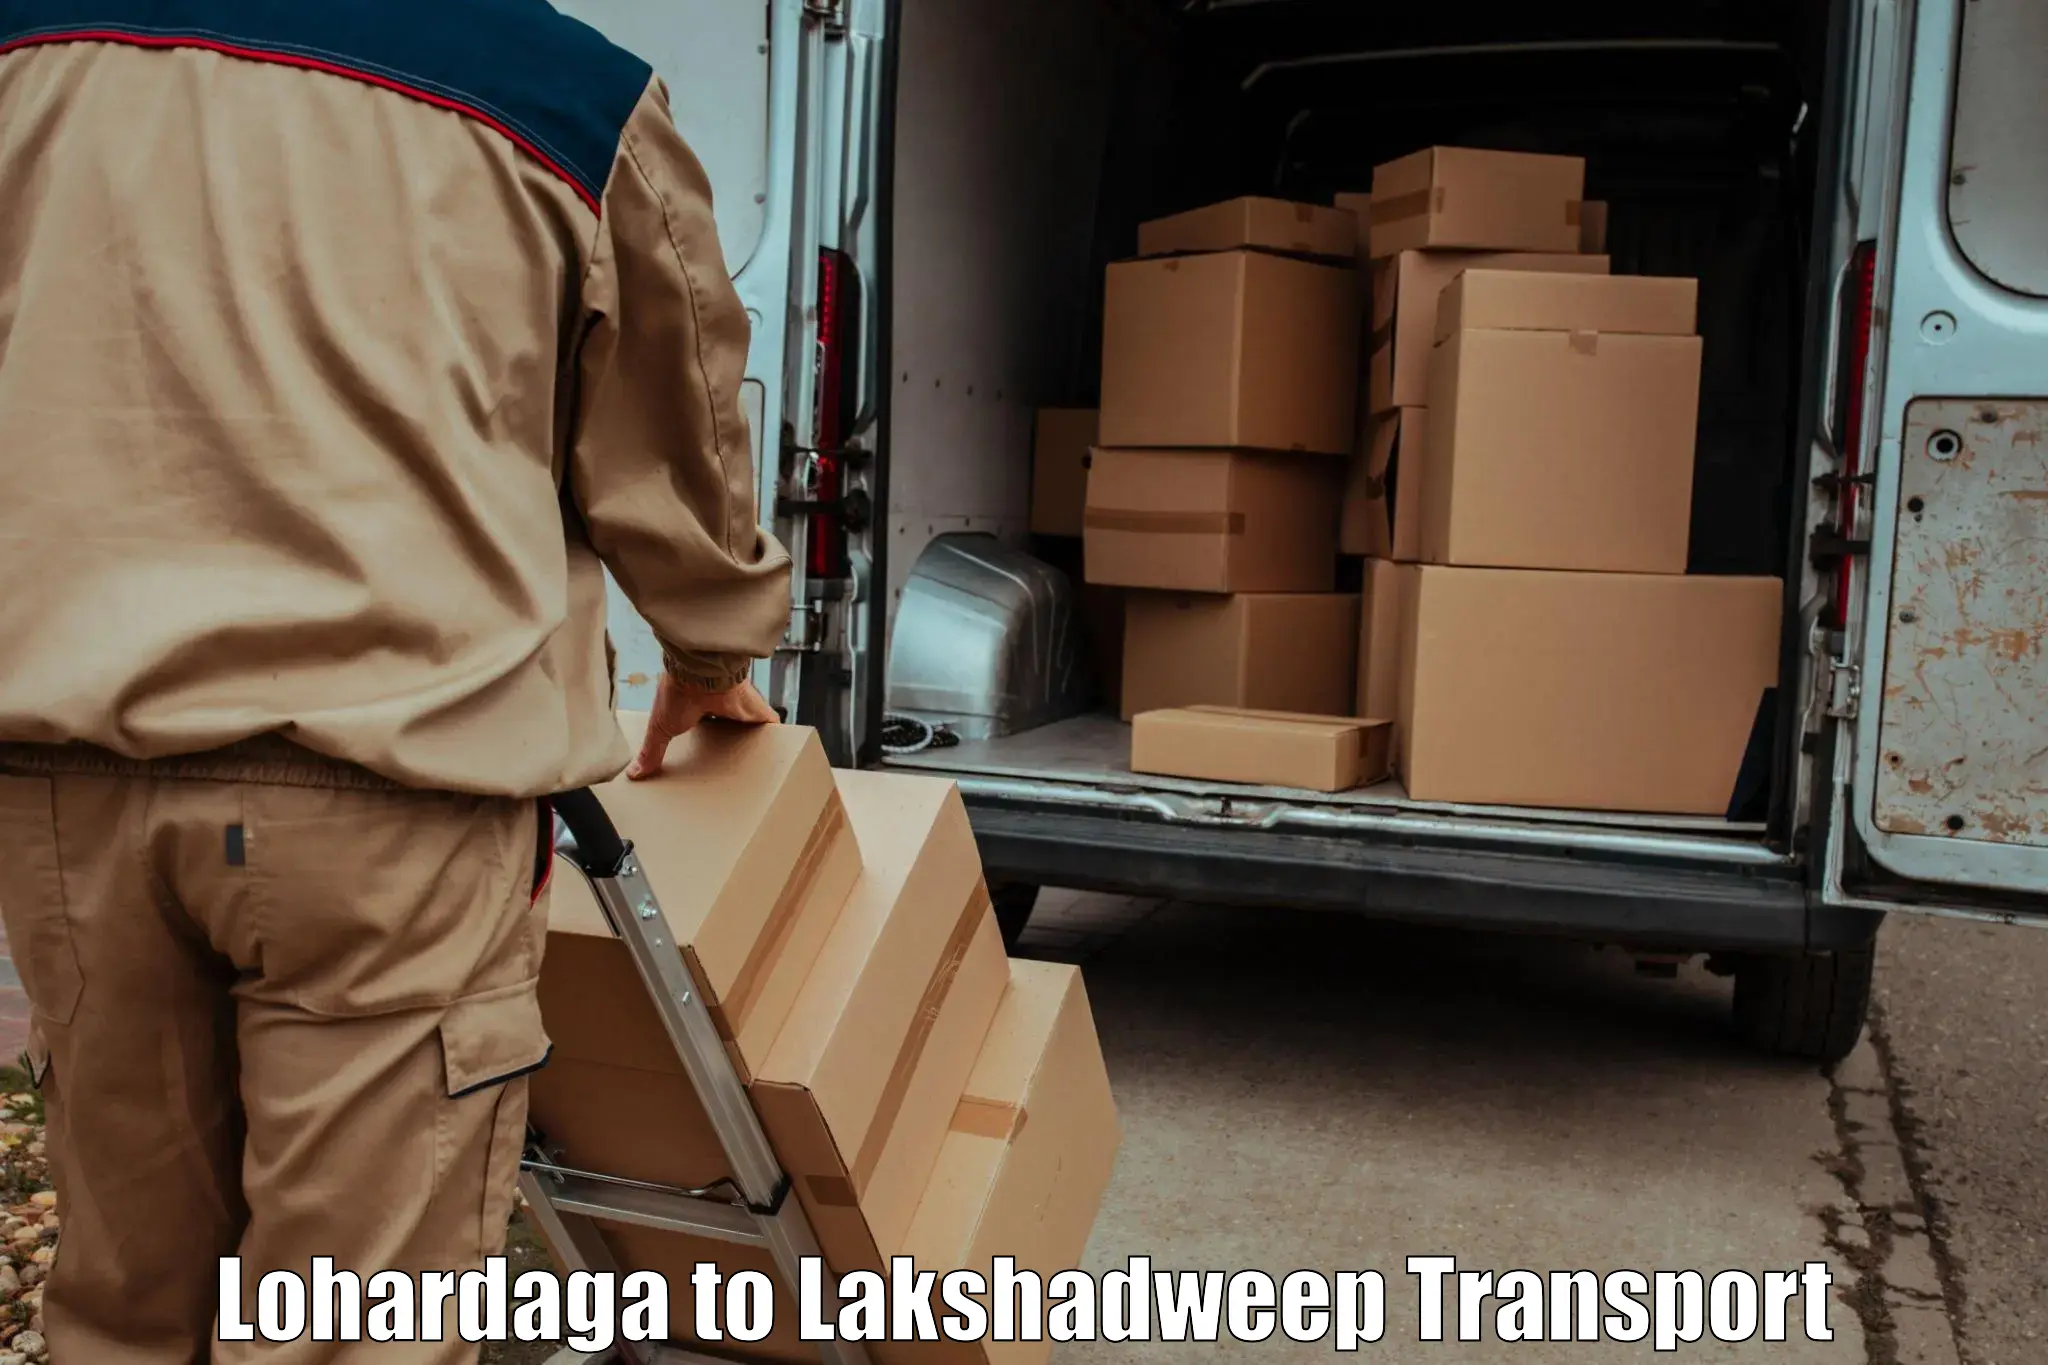 Two wheeler parcel service in Lohardaga to Lakshadweep